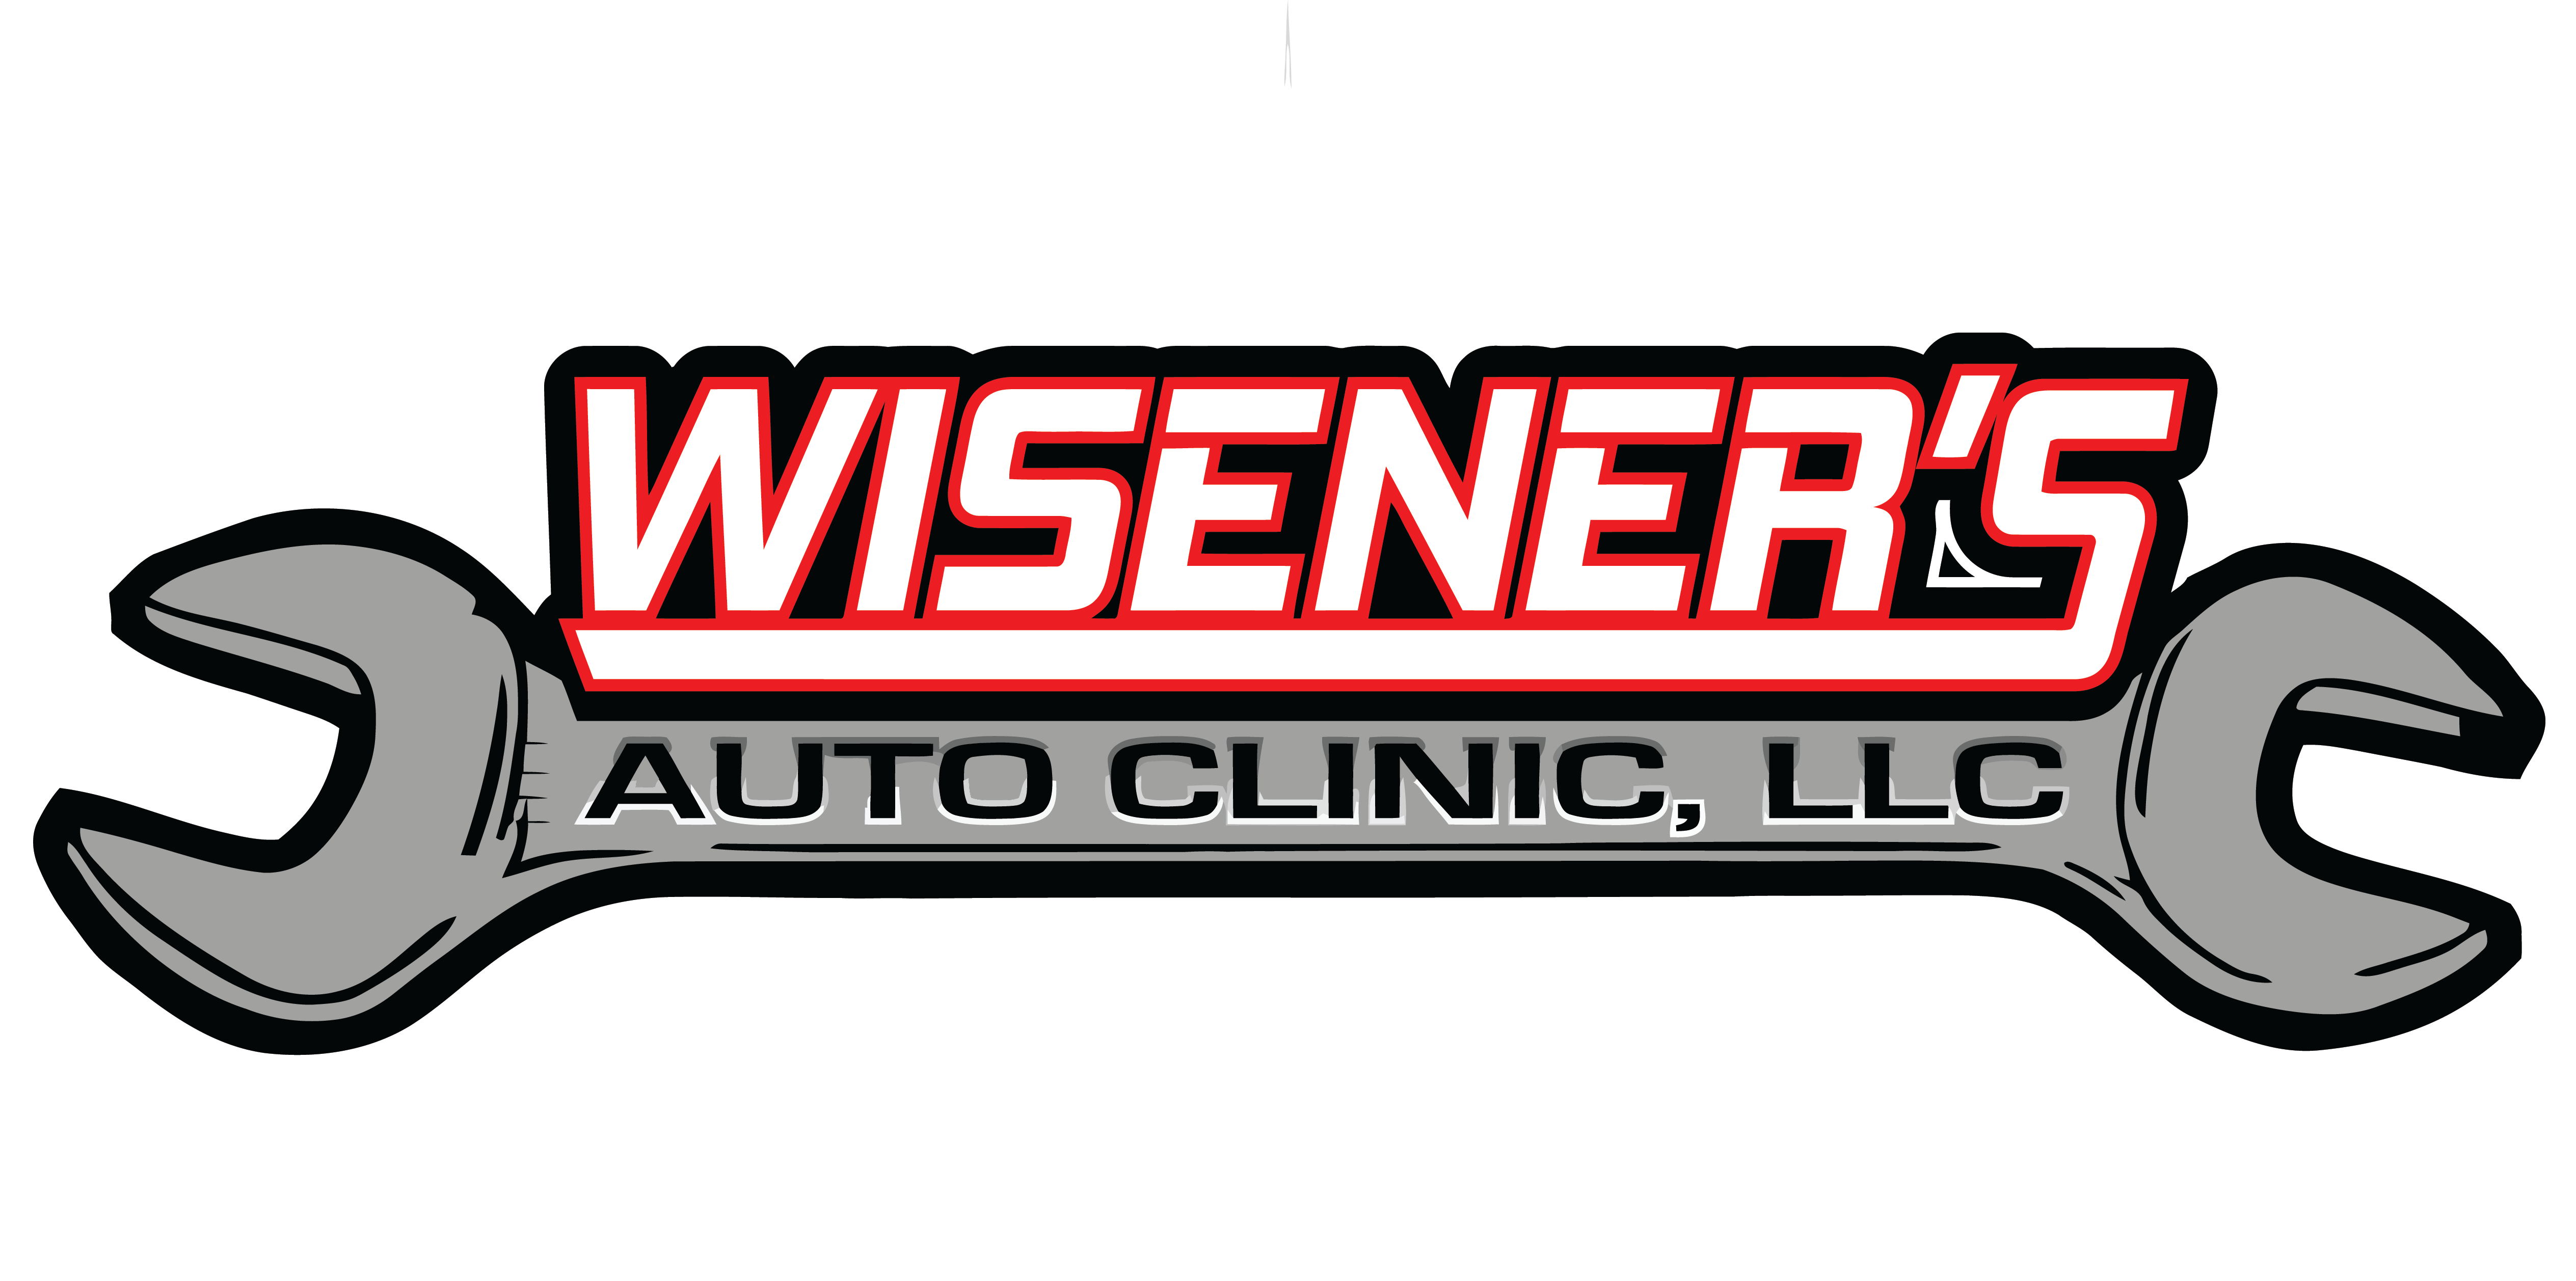 Wisener's Auto Clinic